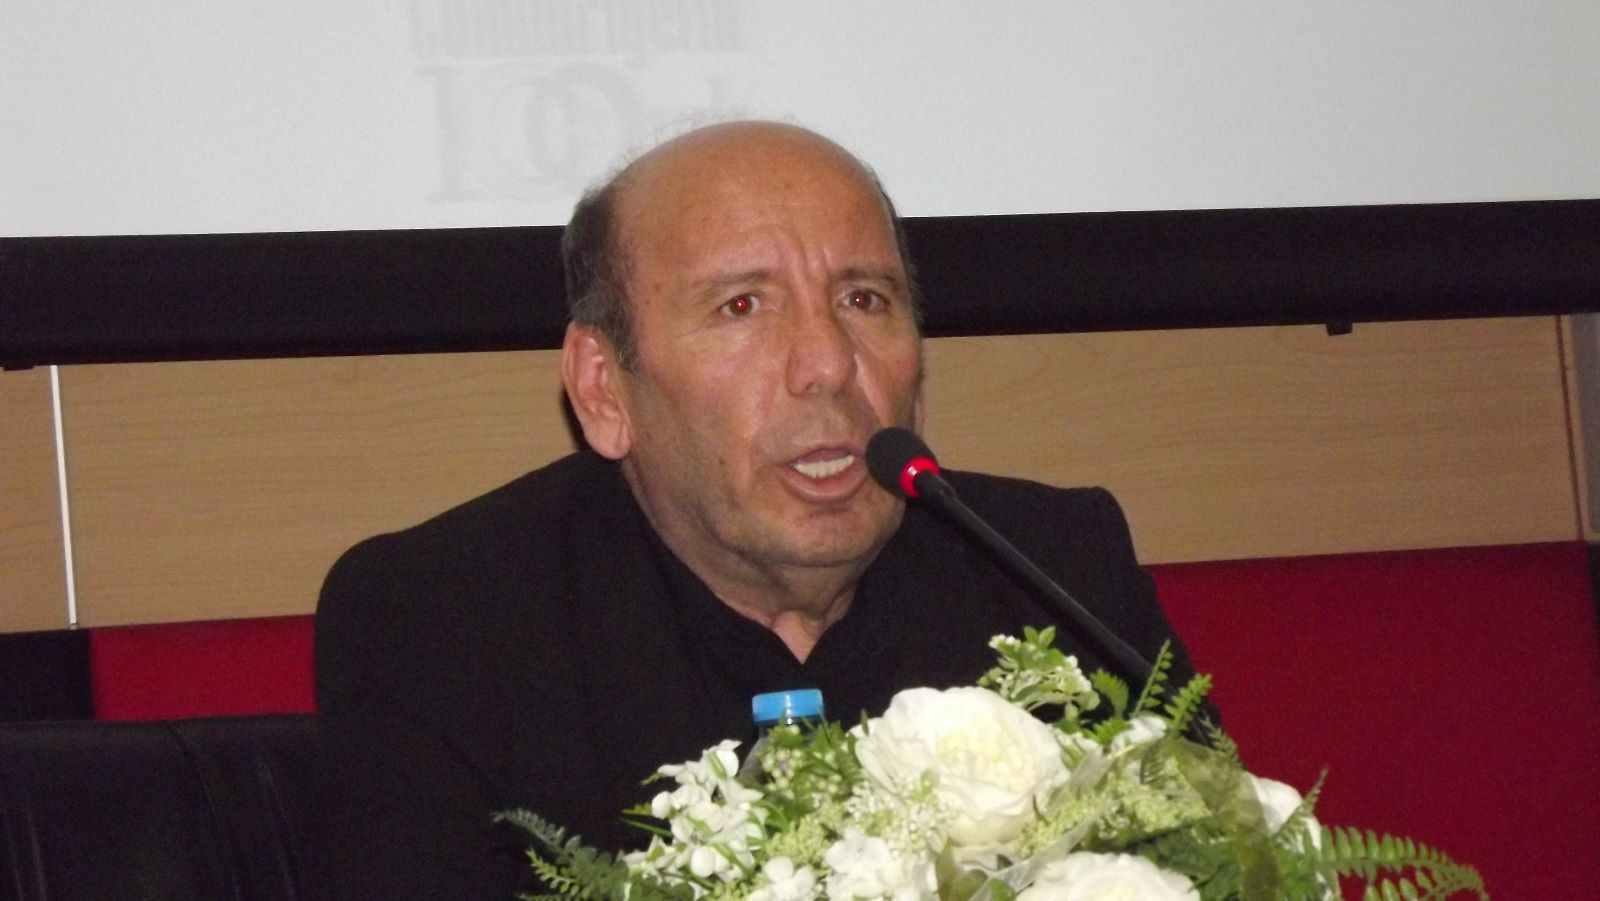 TYB Konya Şubesi’nin düzenlediği “Futbol Sadece Futbol Mu?” konulu konferansta Dünya Araştırmacı gazeteci ödüllü yazar Atilla Türker konuştu: